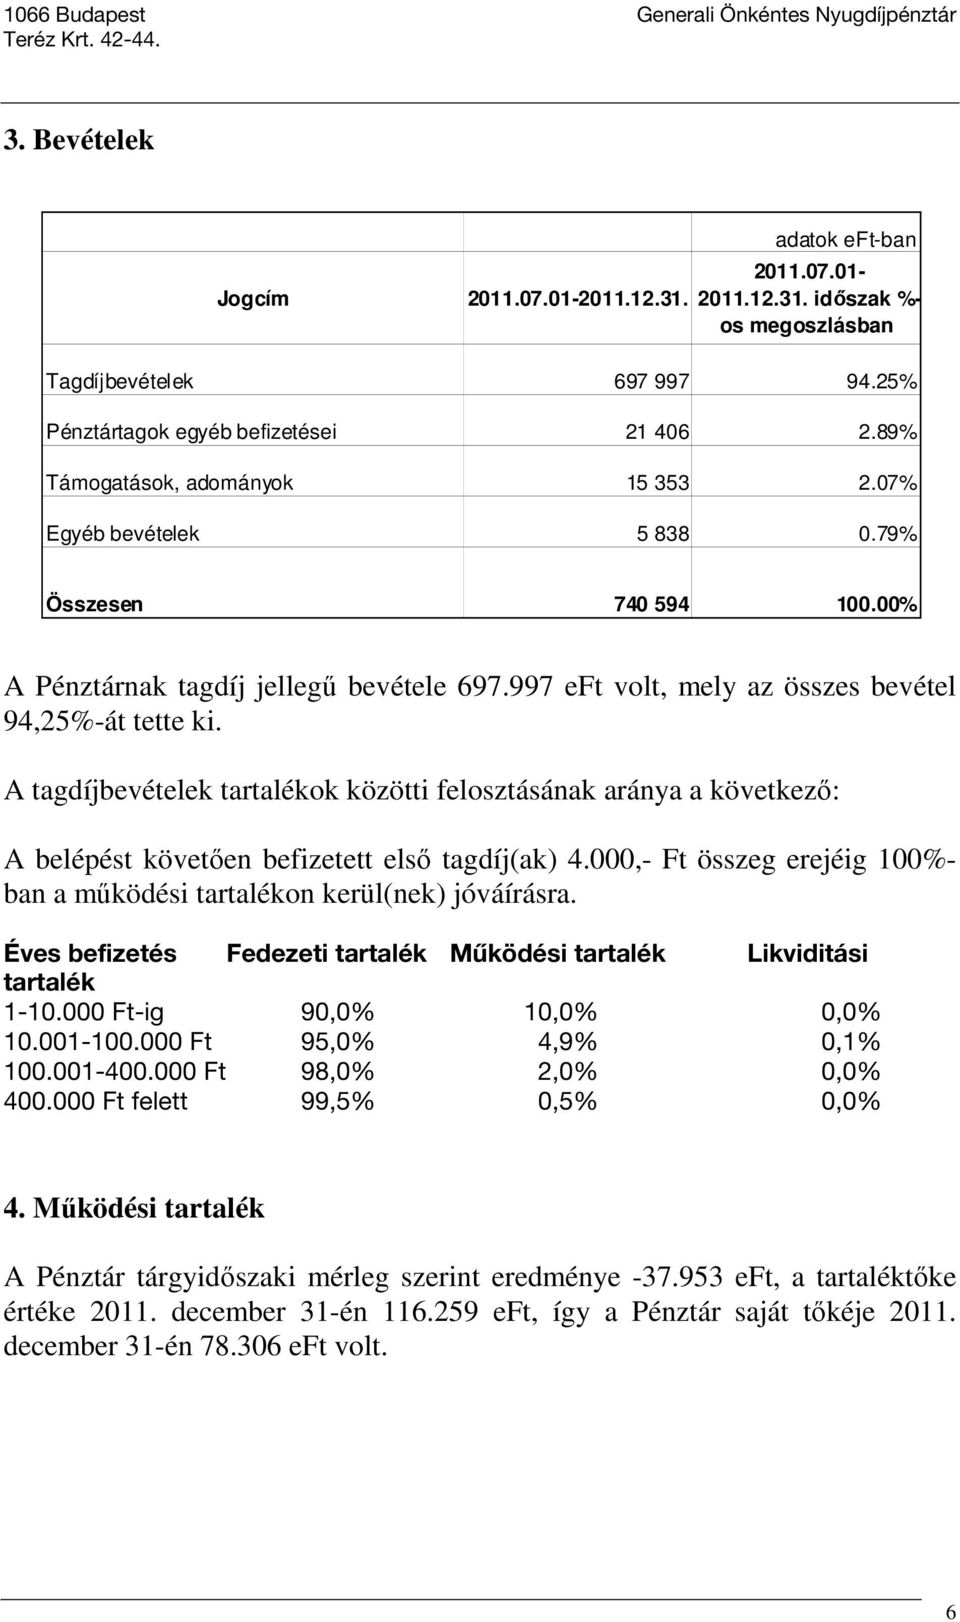 A tagdíjbevételek tartalékok közötti felosztásának aránya a következı: A belépést követıen befizetett elsı tagdíj(ak) 4.000,- Ft összeg erejéig 100%- ban a mőködési tartalékon kerül(nek) jóváírásra.